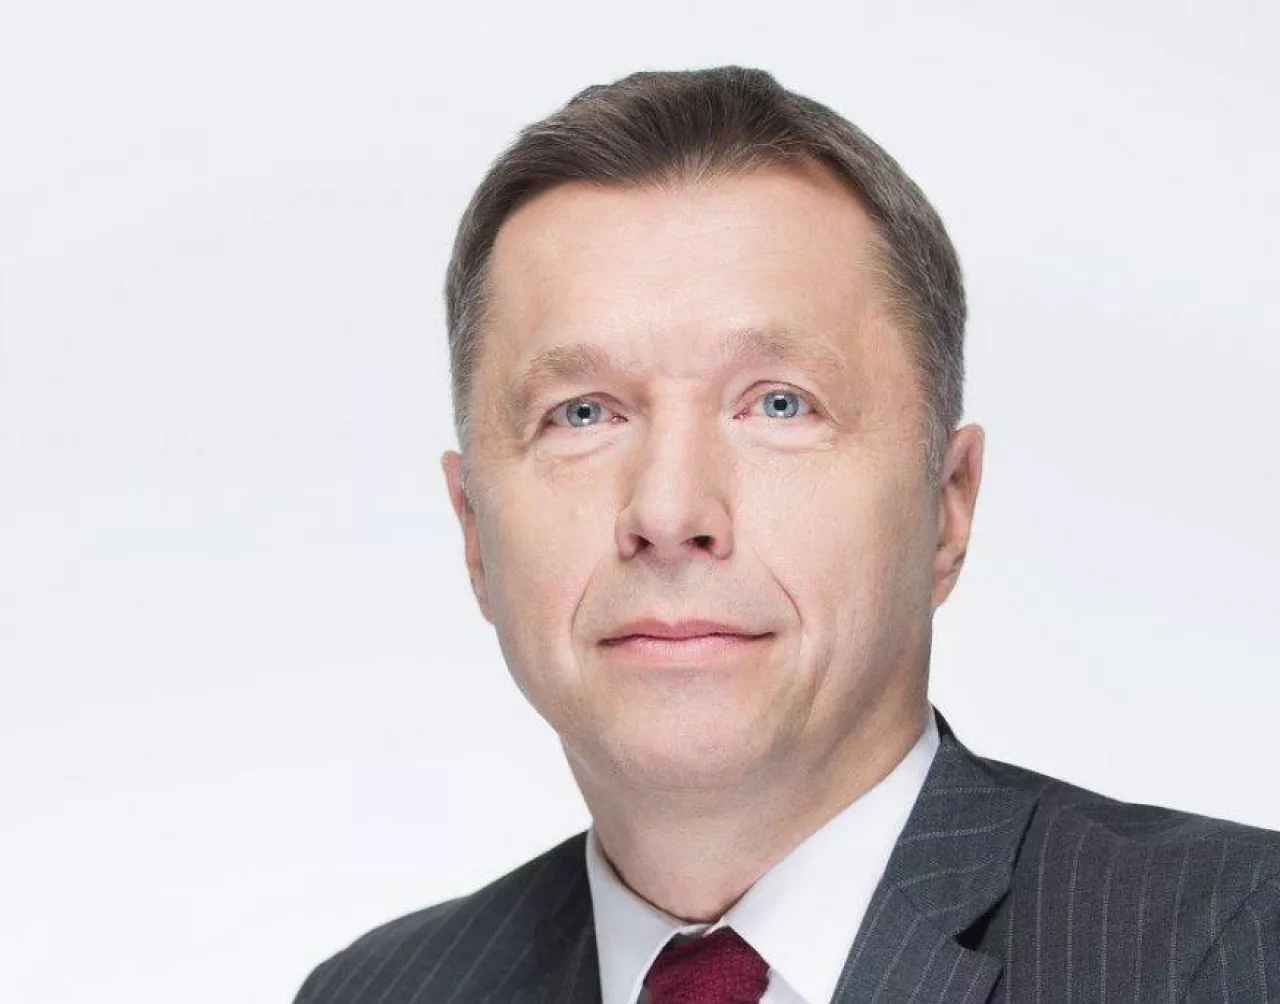 mec. Jarosław Chałas, partner zarządzający kancelarii Chałas i Wspólnicy (Kancelaria Chałas i Wspólnicy)